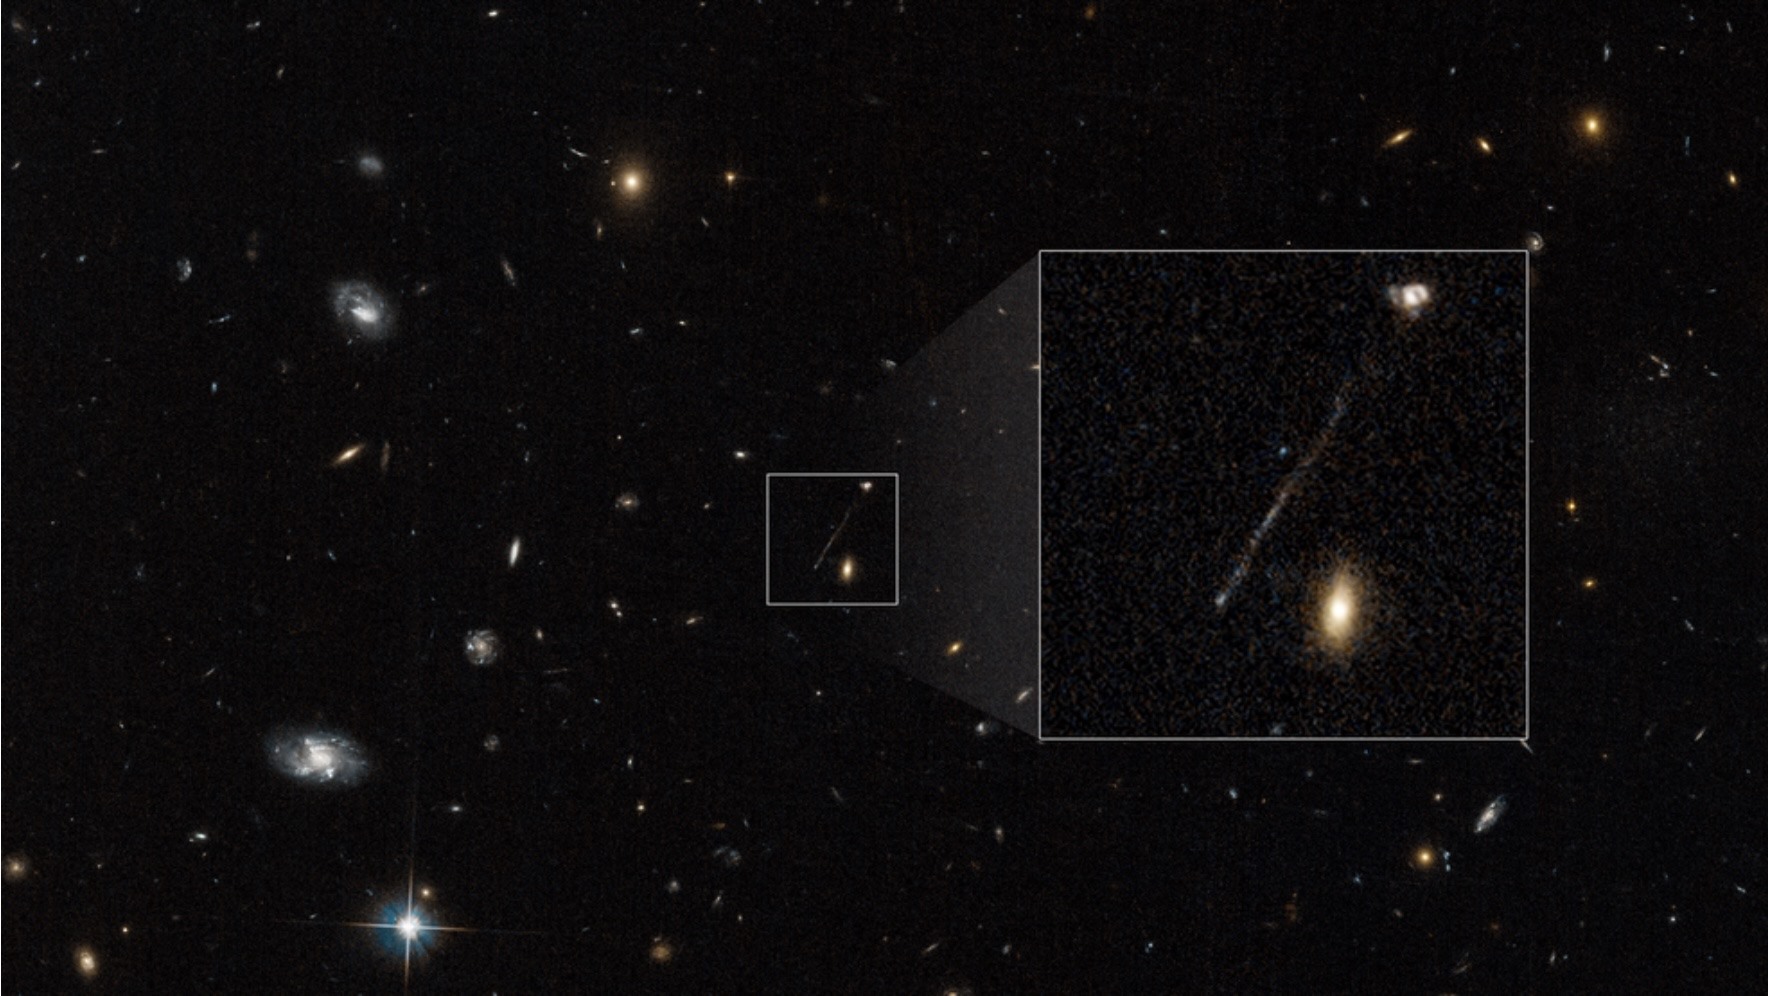 Chuỗi các ngôi sao trẻ màu xanh dài 200.000 năm ánh sáng cùng các hố đen. Ảnh: NASA